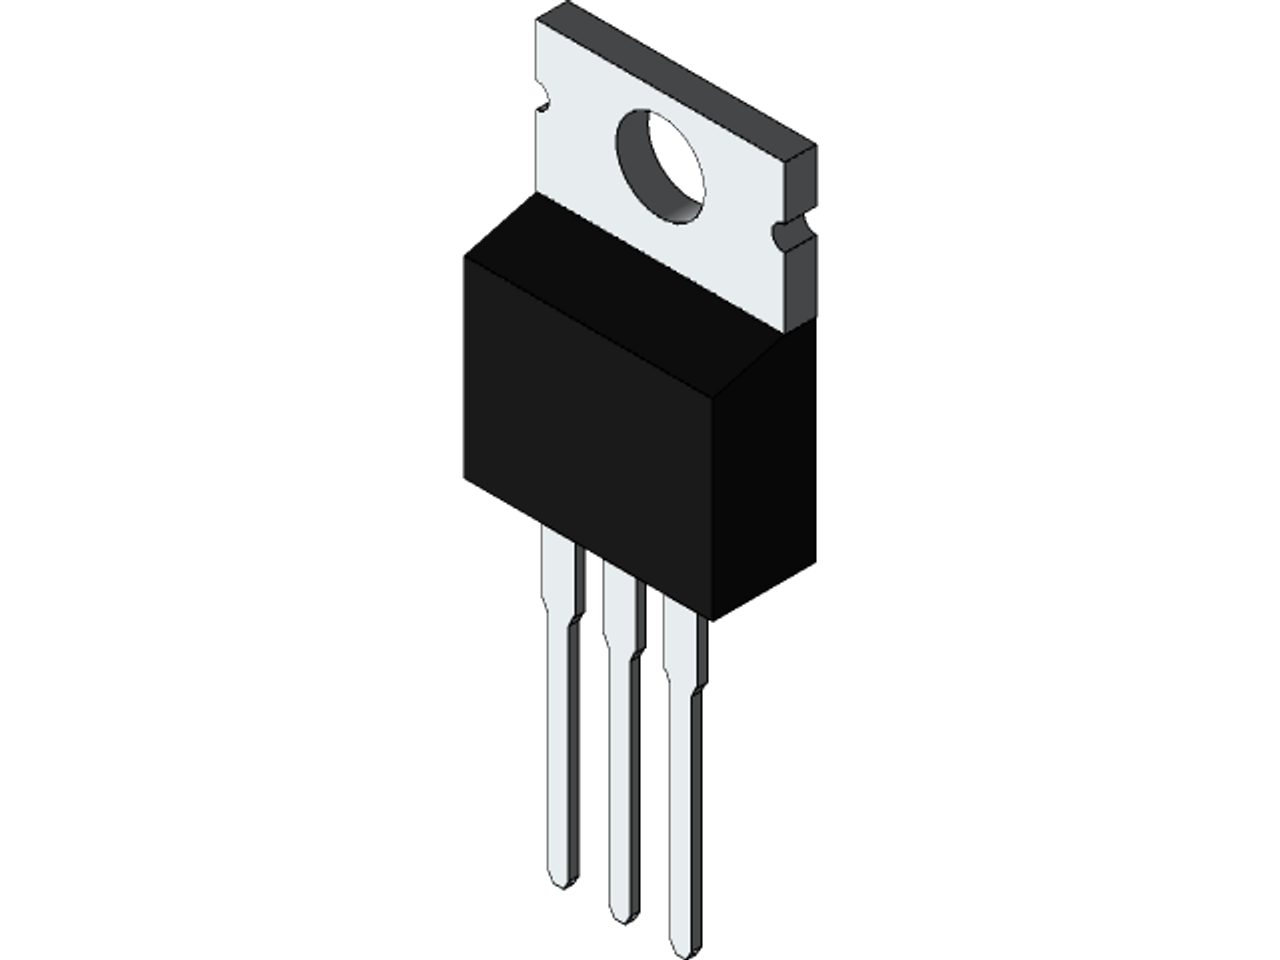 C1061 : 2SC1061 ; Transistor NPN 50V 3A 25W 8MHz, TO-220 BCE